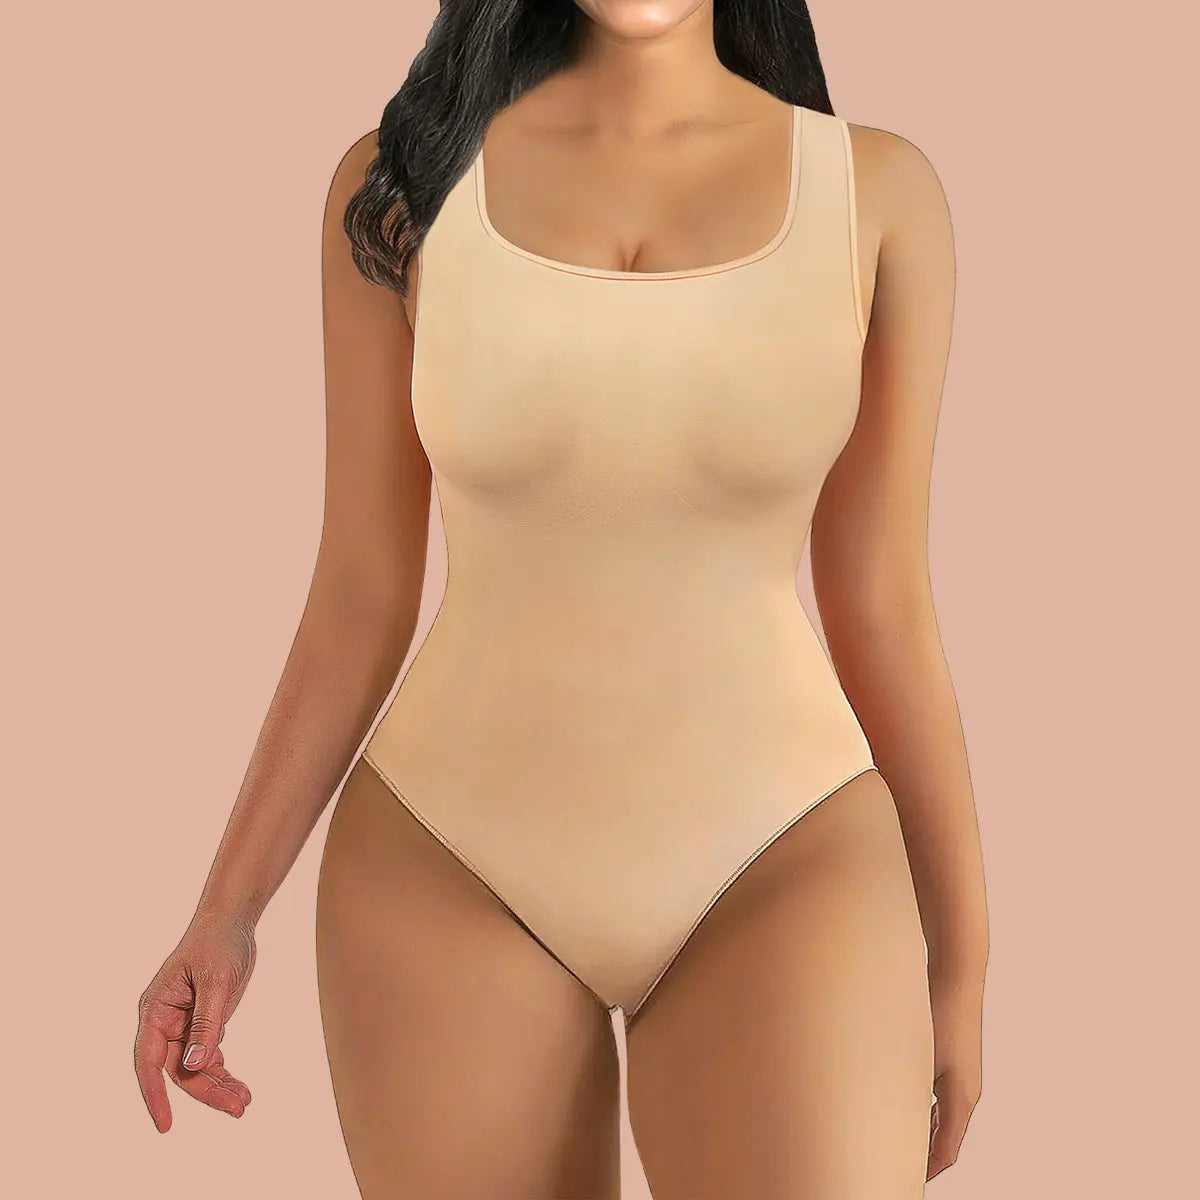 DNAKEN Bodysuit for Women Tummy Control Shapewear